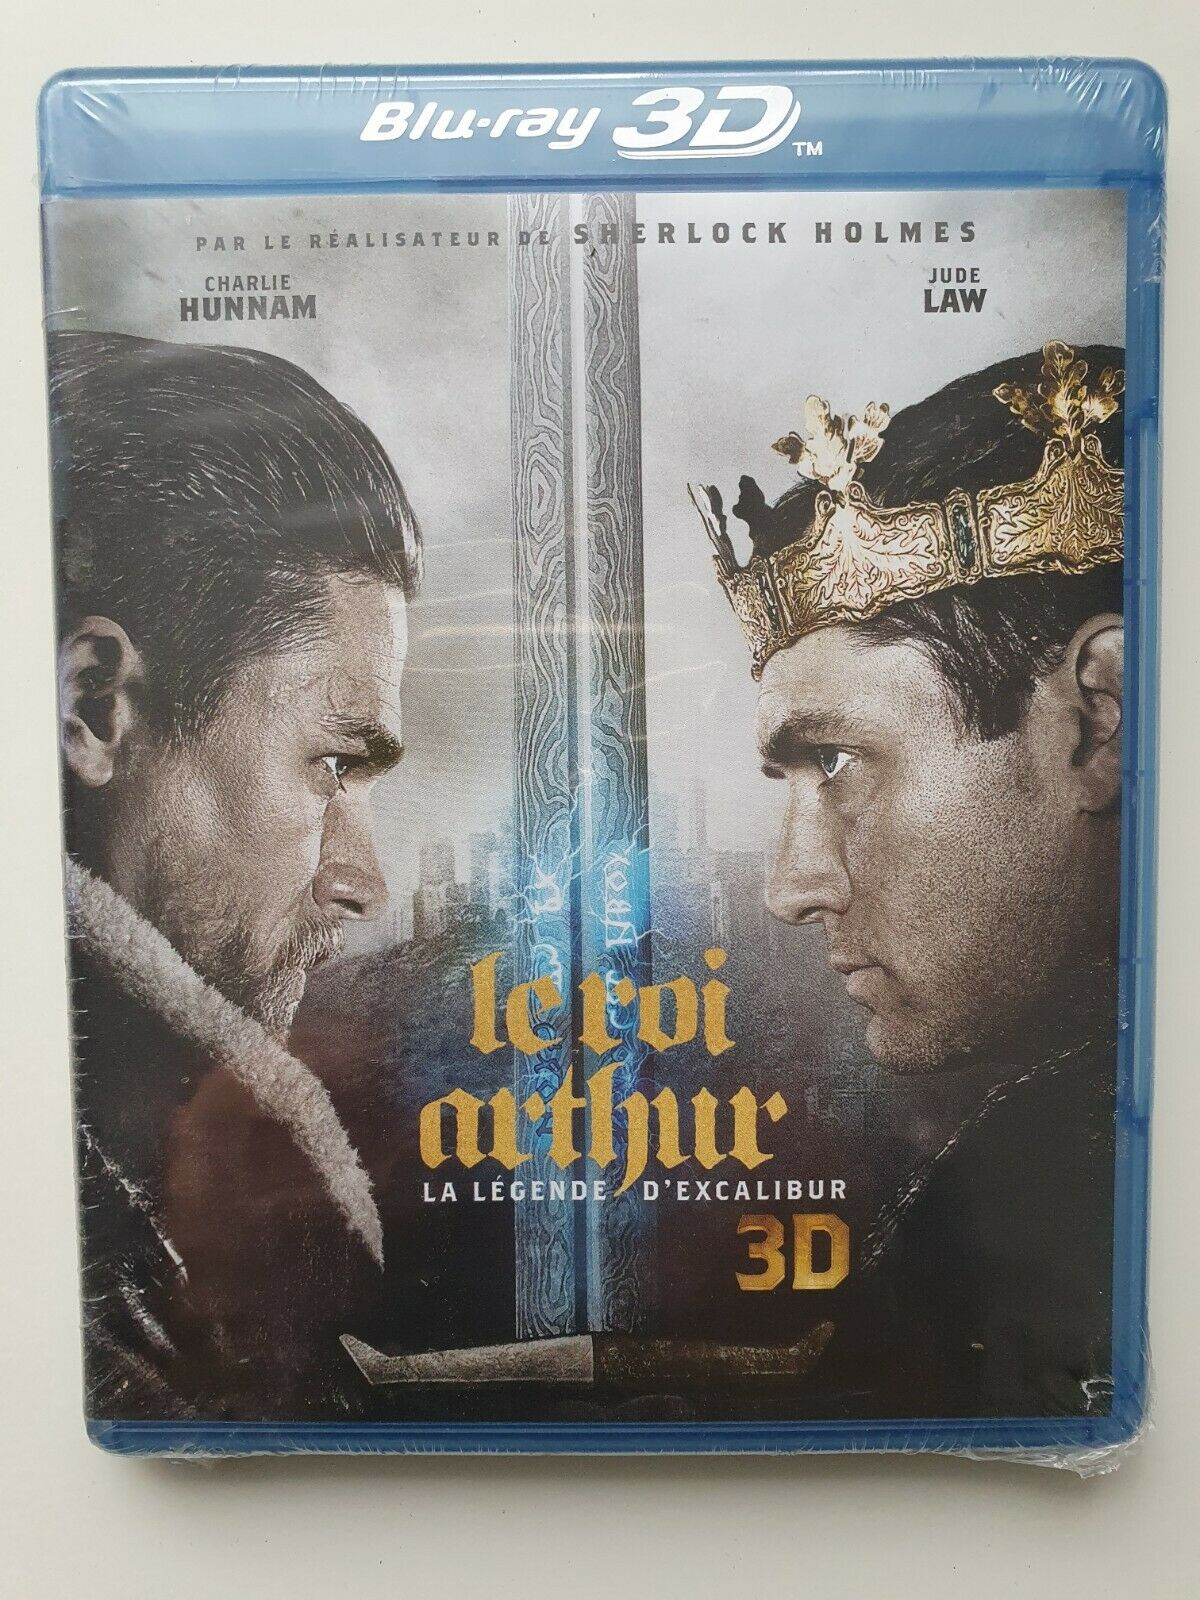 5051889613251 Le Roi Arthur Blu Ray 3D par le realisateur de Sherlock Holmes French NEW SEALED